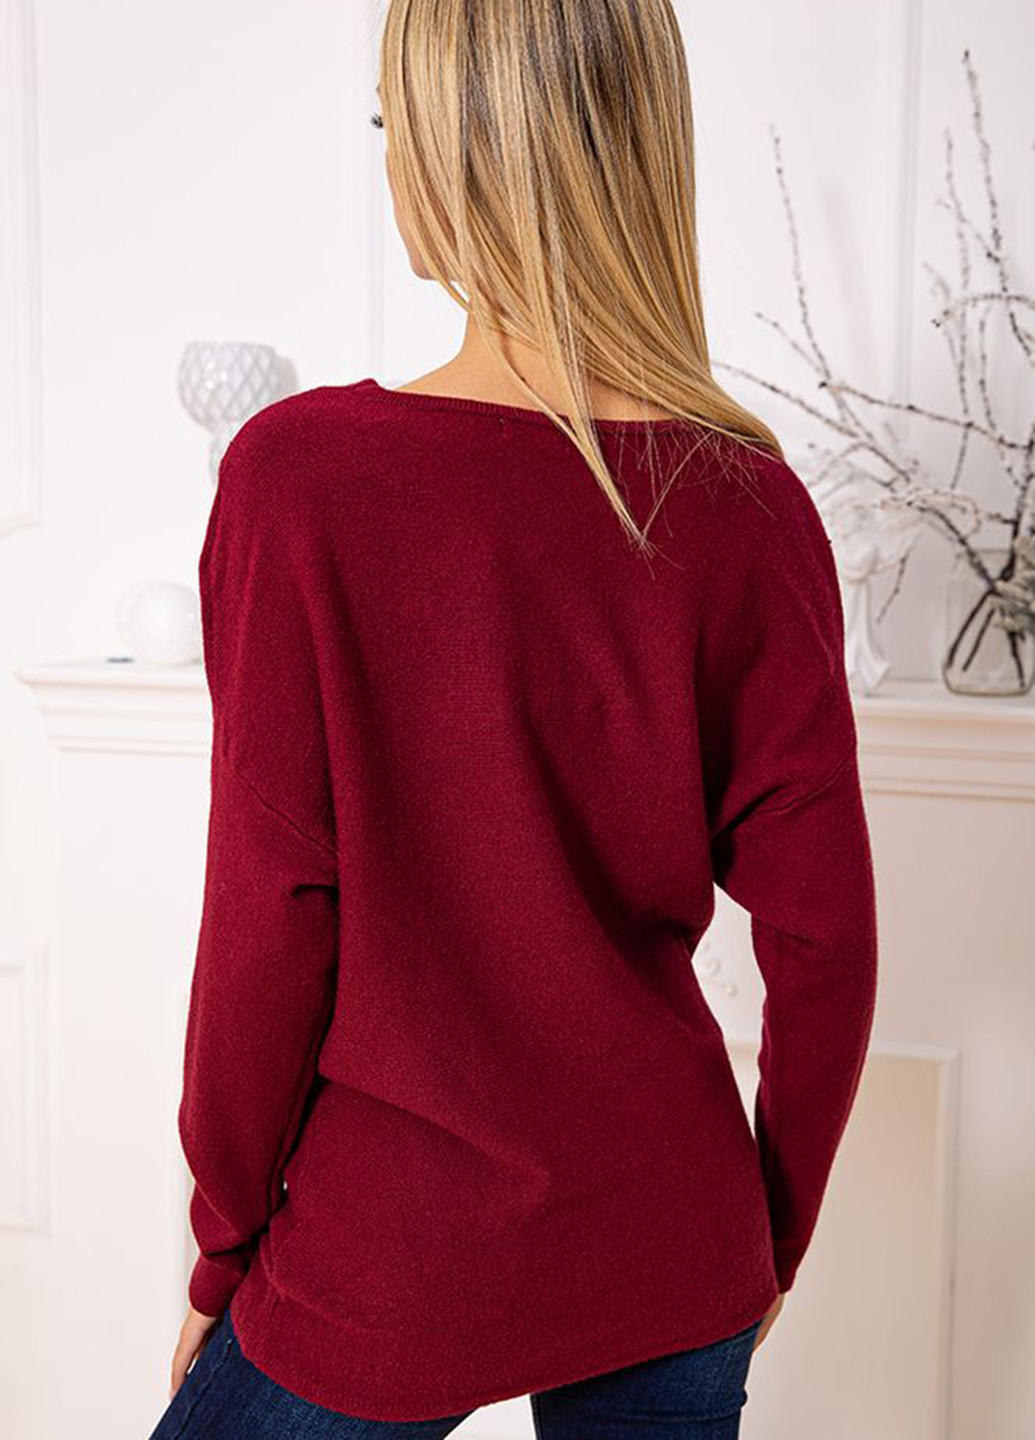 Бордовый зимний свитер Ager